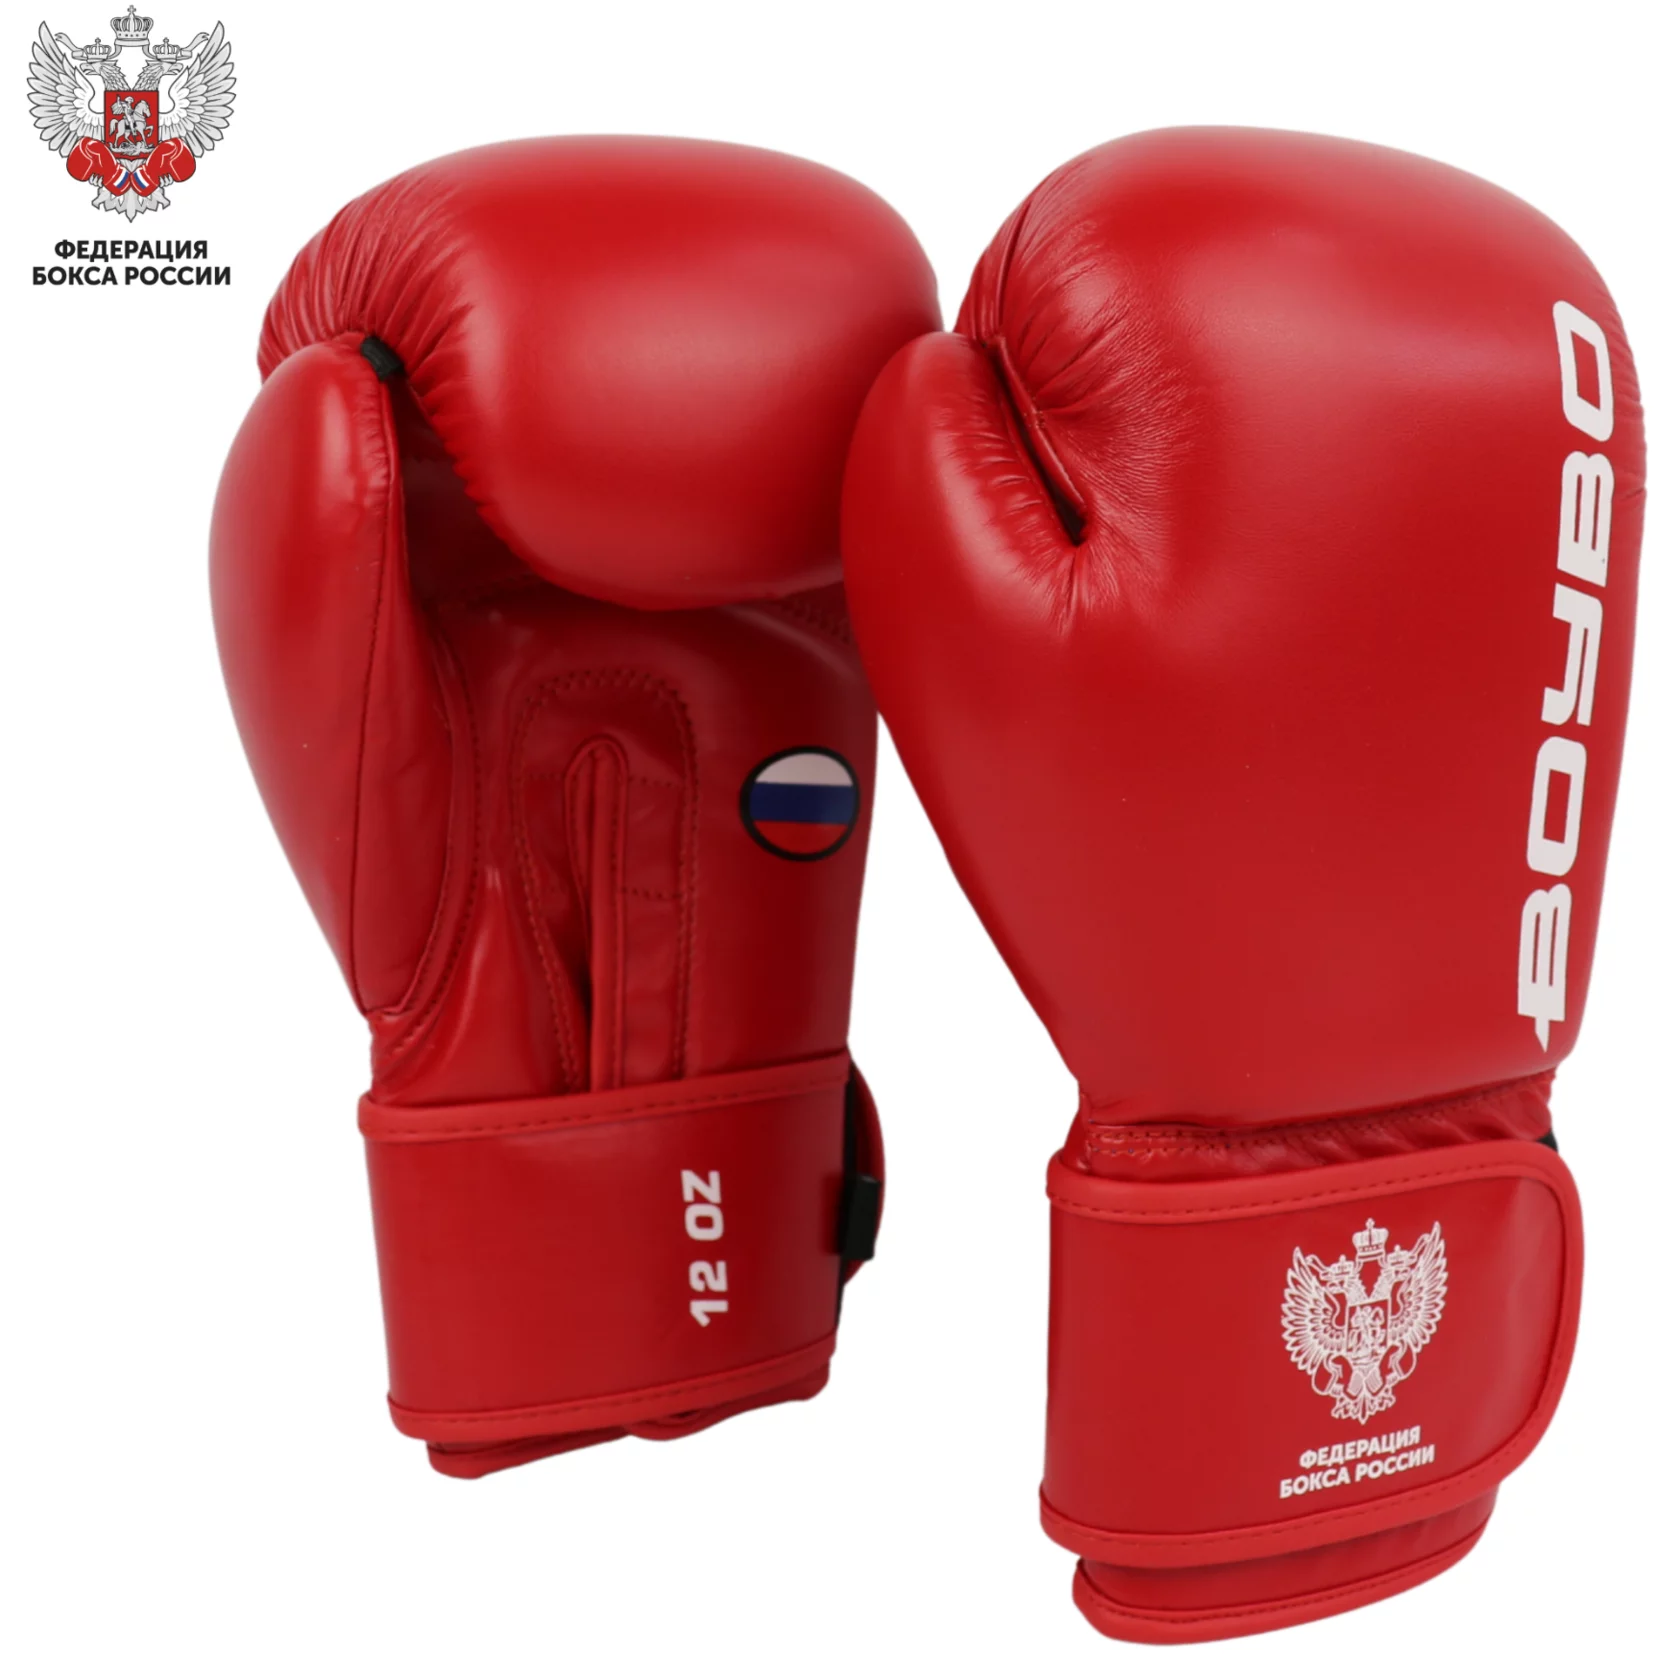  Боксерские перчатки BoyBo TITAN лицензированные красные 